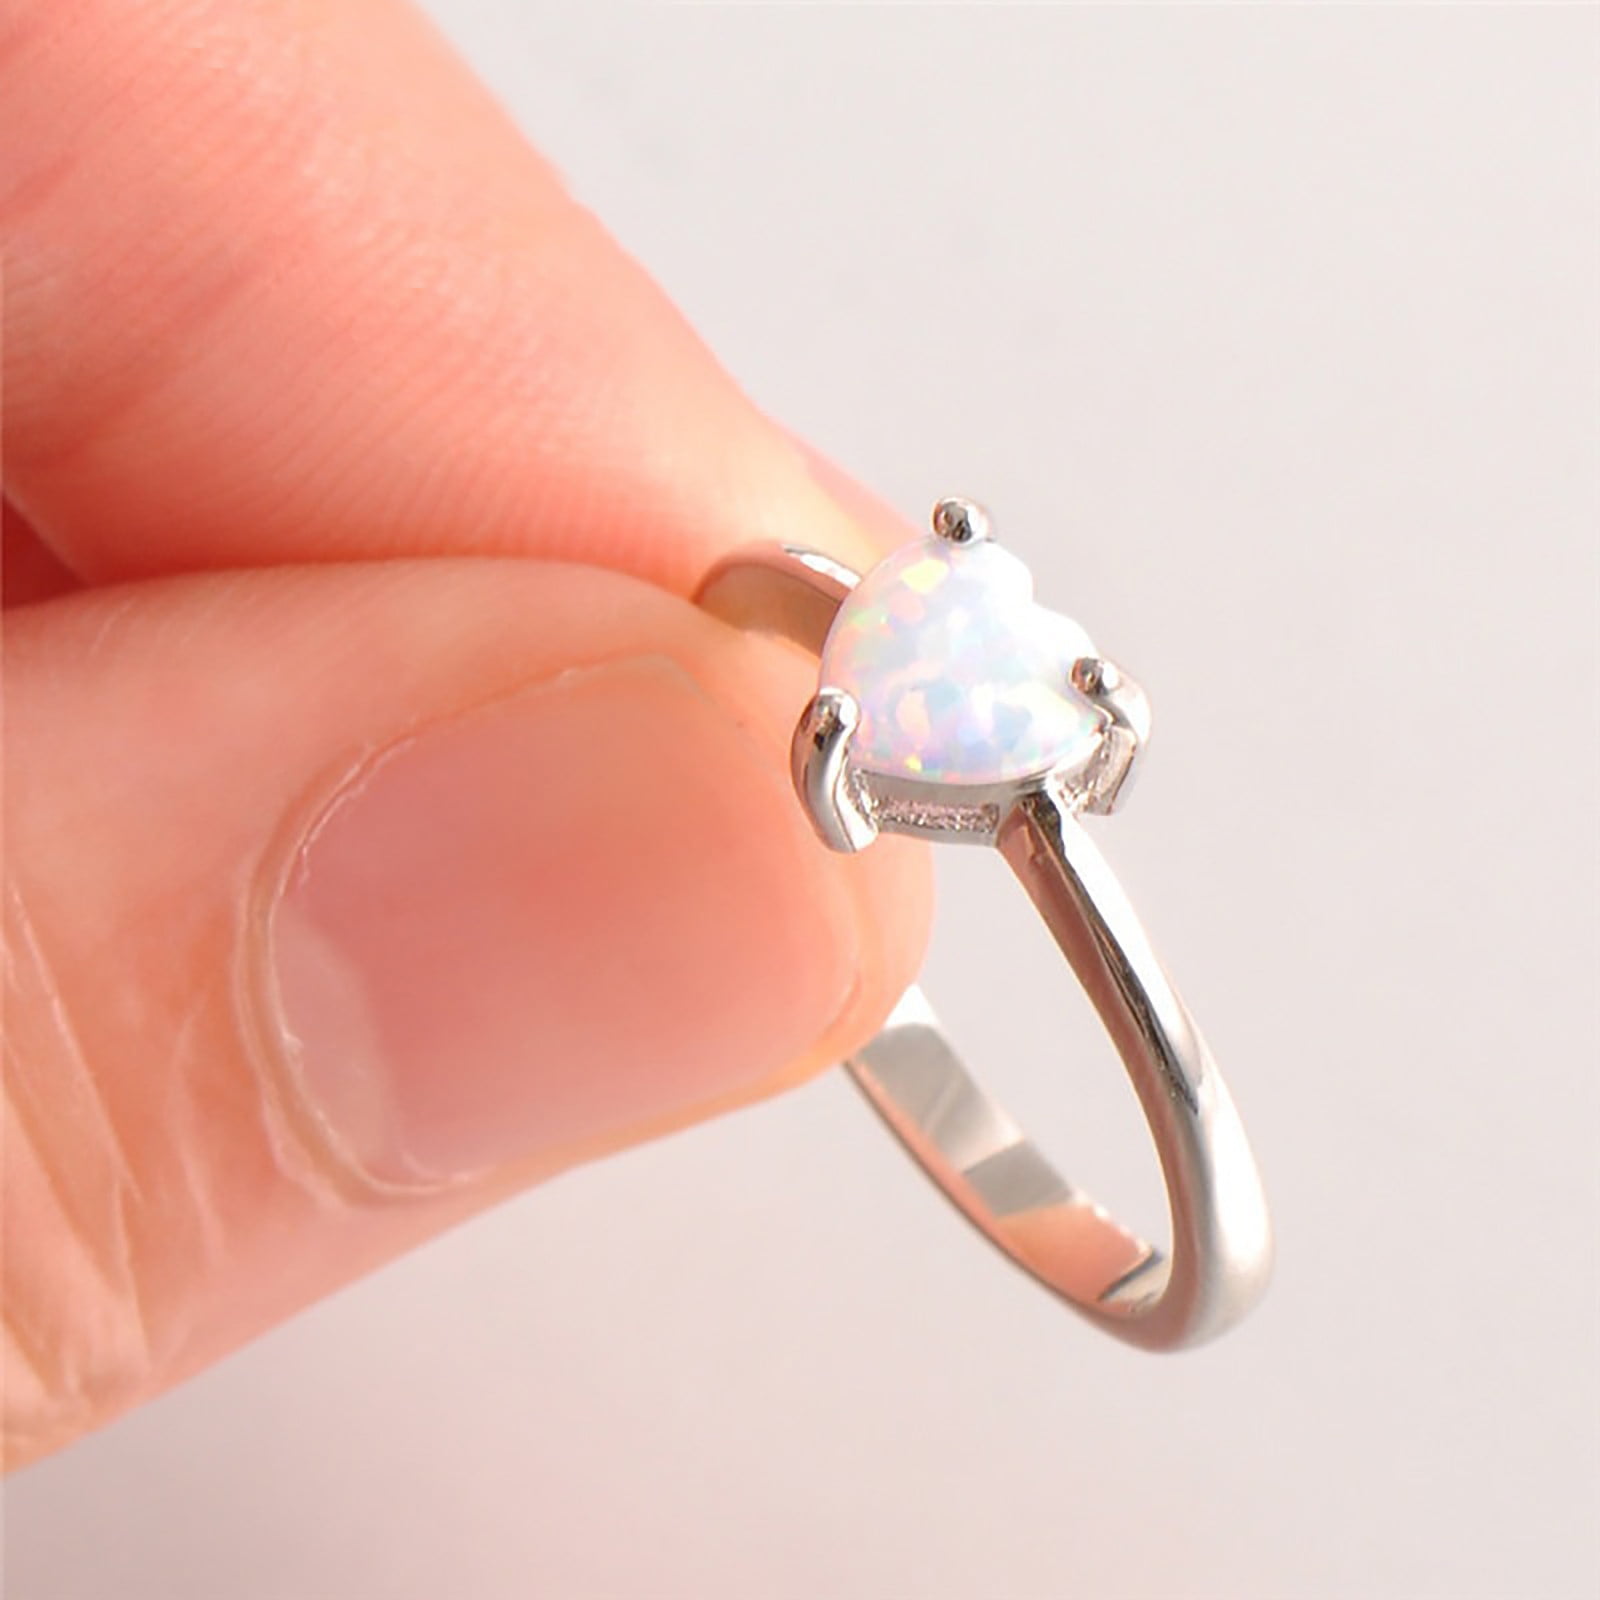 WOKEZ Engagement Wedding Ring Engagement Ring Wedding Rings For Women Fake  Engagement Ring Of Women (Gem Color : Style 12, Ring Size : 5) : Amazon.de:  Fashion